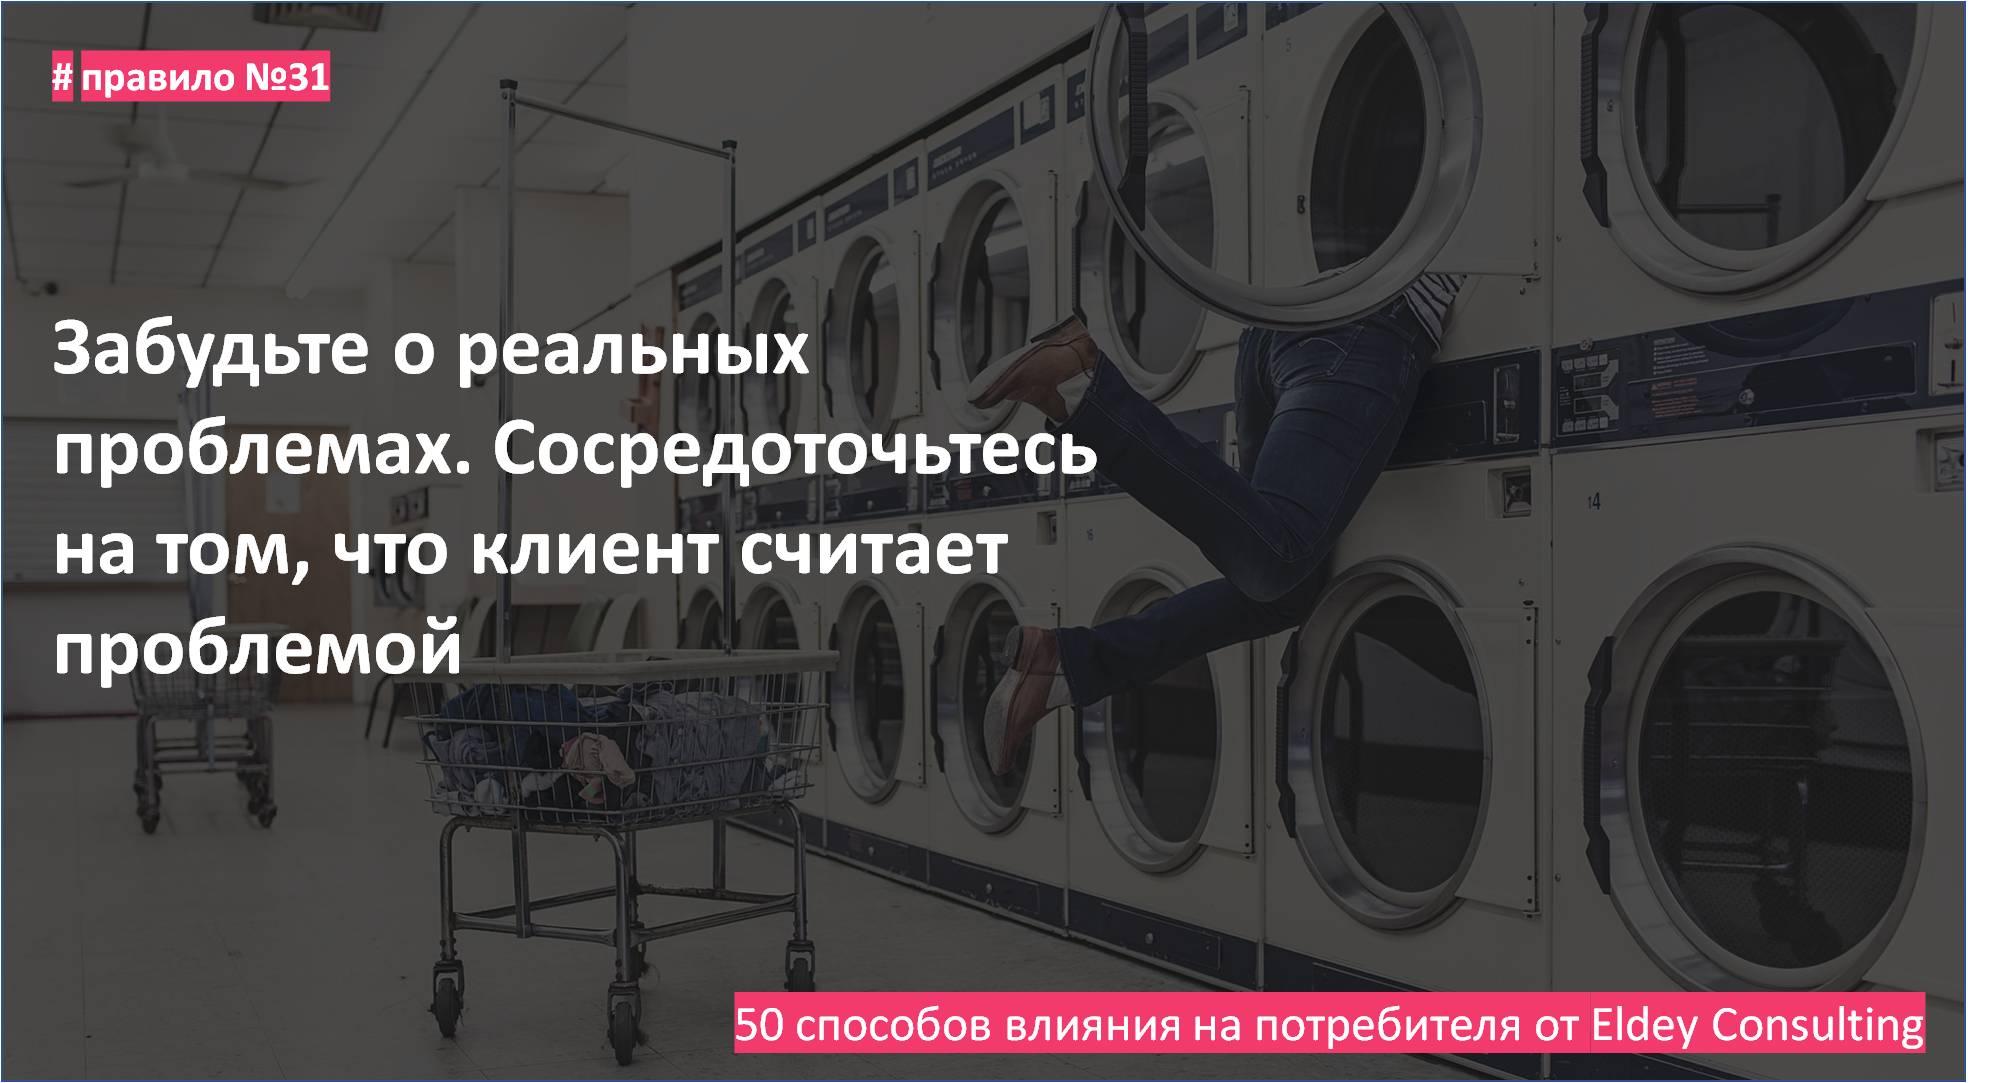 психология маркетинга - поведение потребителей Eldey Consulting Group. eldey.ru